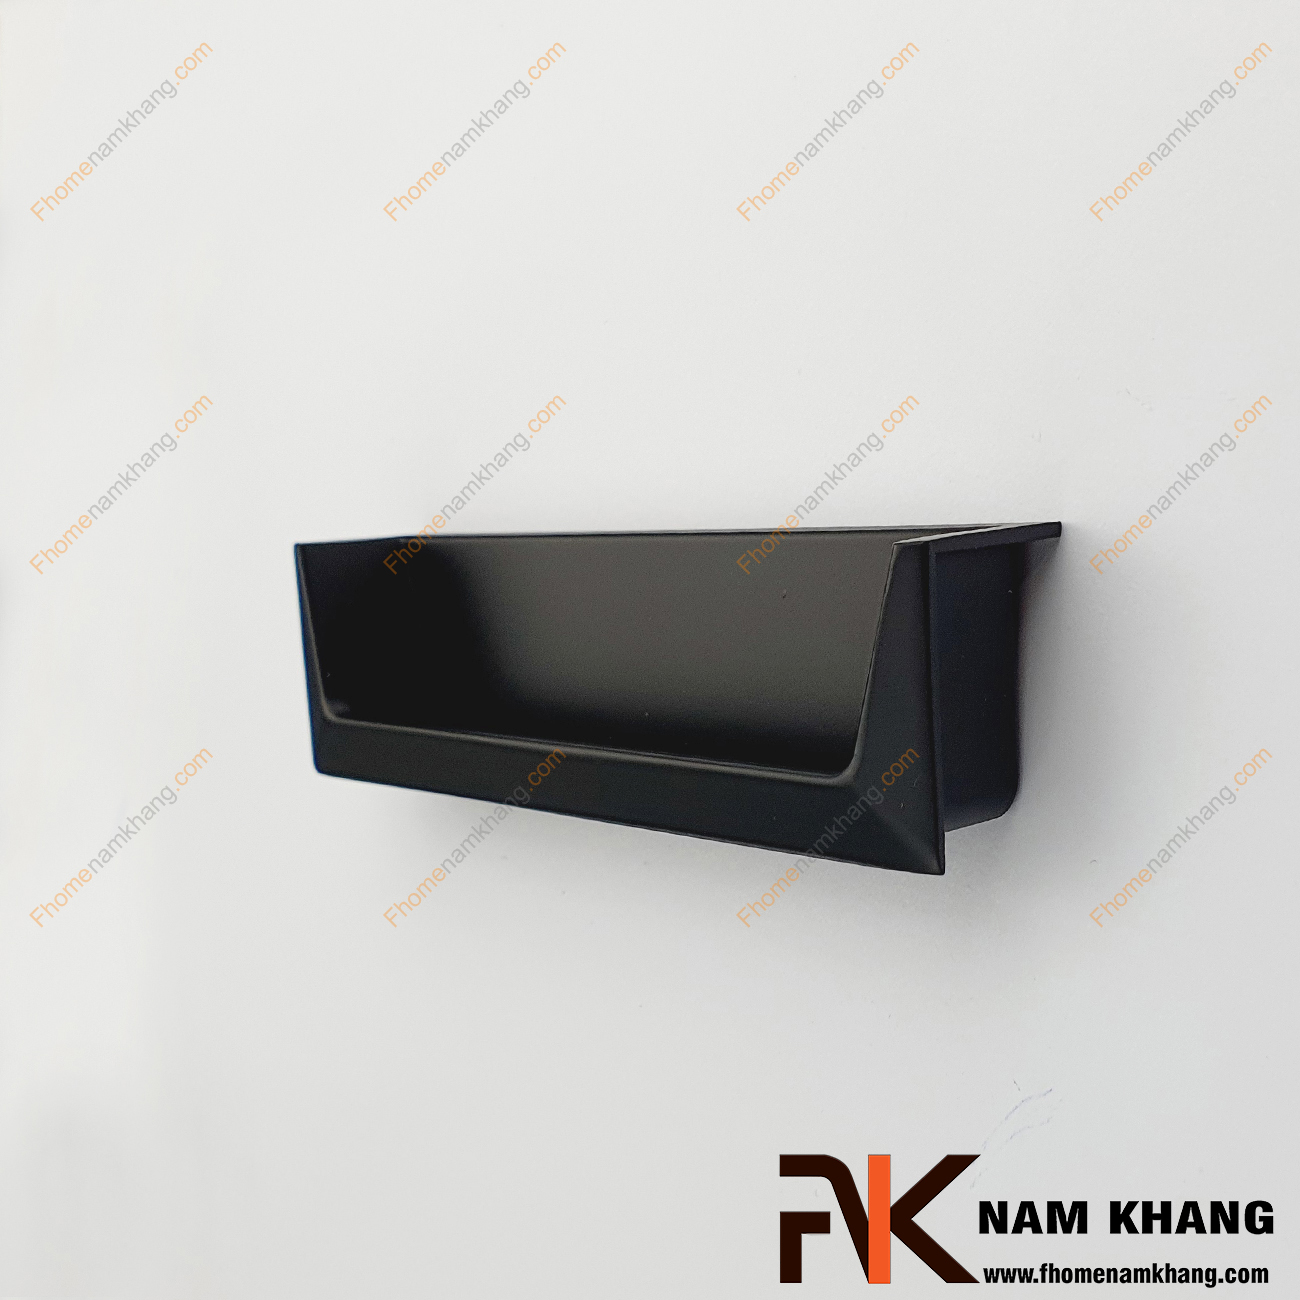 Tay nắm âm tủ dạng thanh màu đen NK410V-D , một mẫu tay nắm cửa tủ, cửa chính rất độc đáo. Được thiết kế với khuôn dạng thanh mảnh vuông góc và lắp đặt âm vào bên trong cánh cửa, điều này tăng khả năng ghép nối bền chặt hơn.